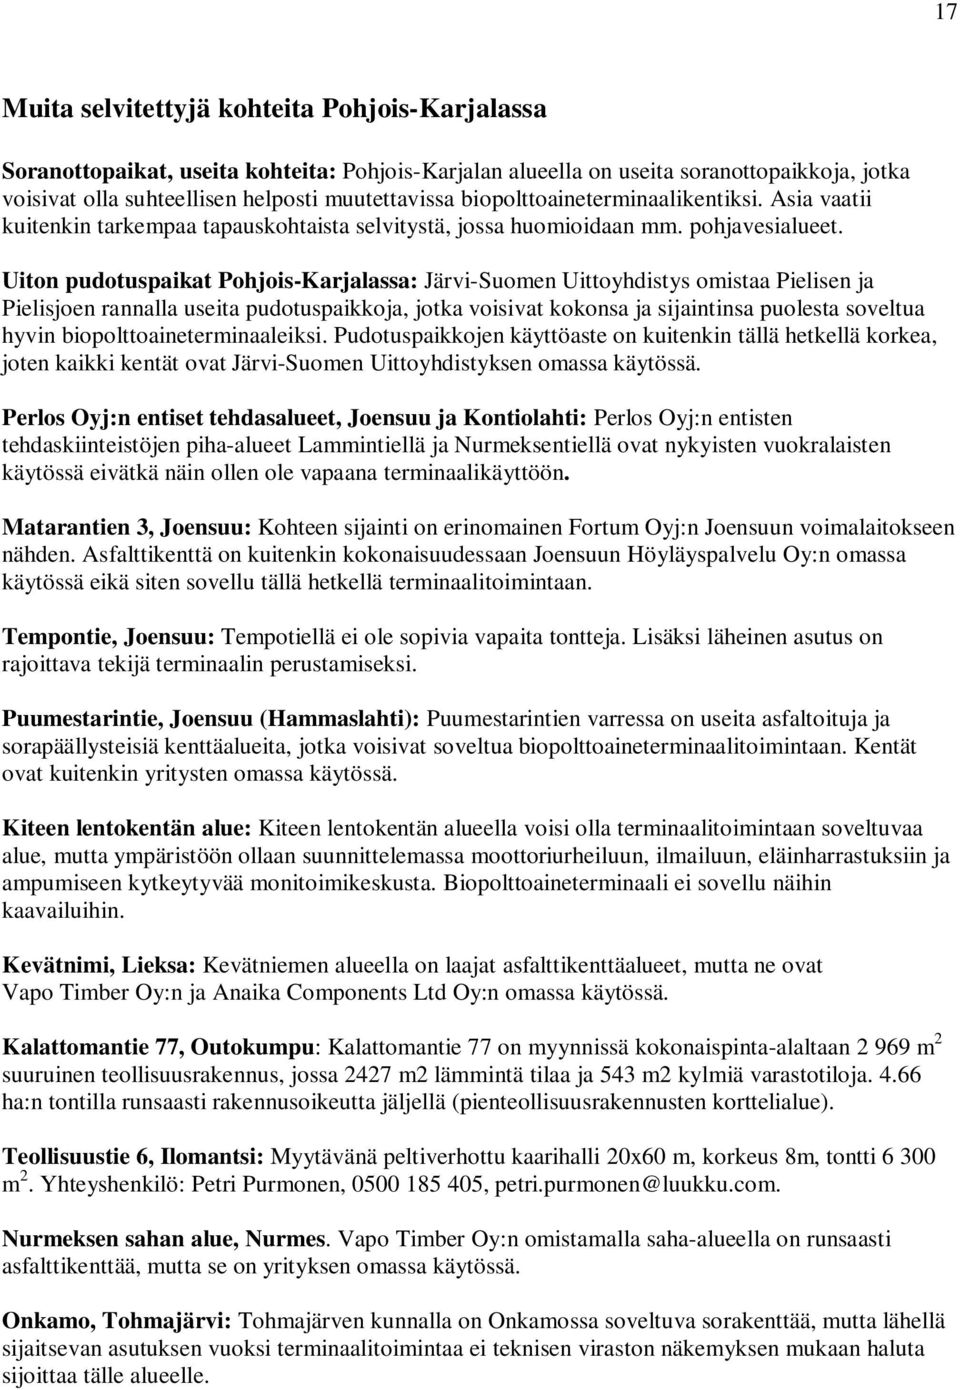 Uiton pudotuspaikat Pohjois-Karjalassa: Järvi-Suomen Uittoyhdistys omistaa Pielisen ja Pielisjoen rannalla useita pudotuspaikkoja, jotka voisivat kokonsa ja sijaintinsa puolesta soveltua hyvin